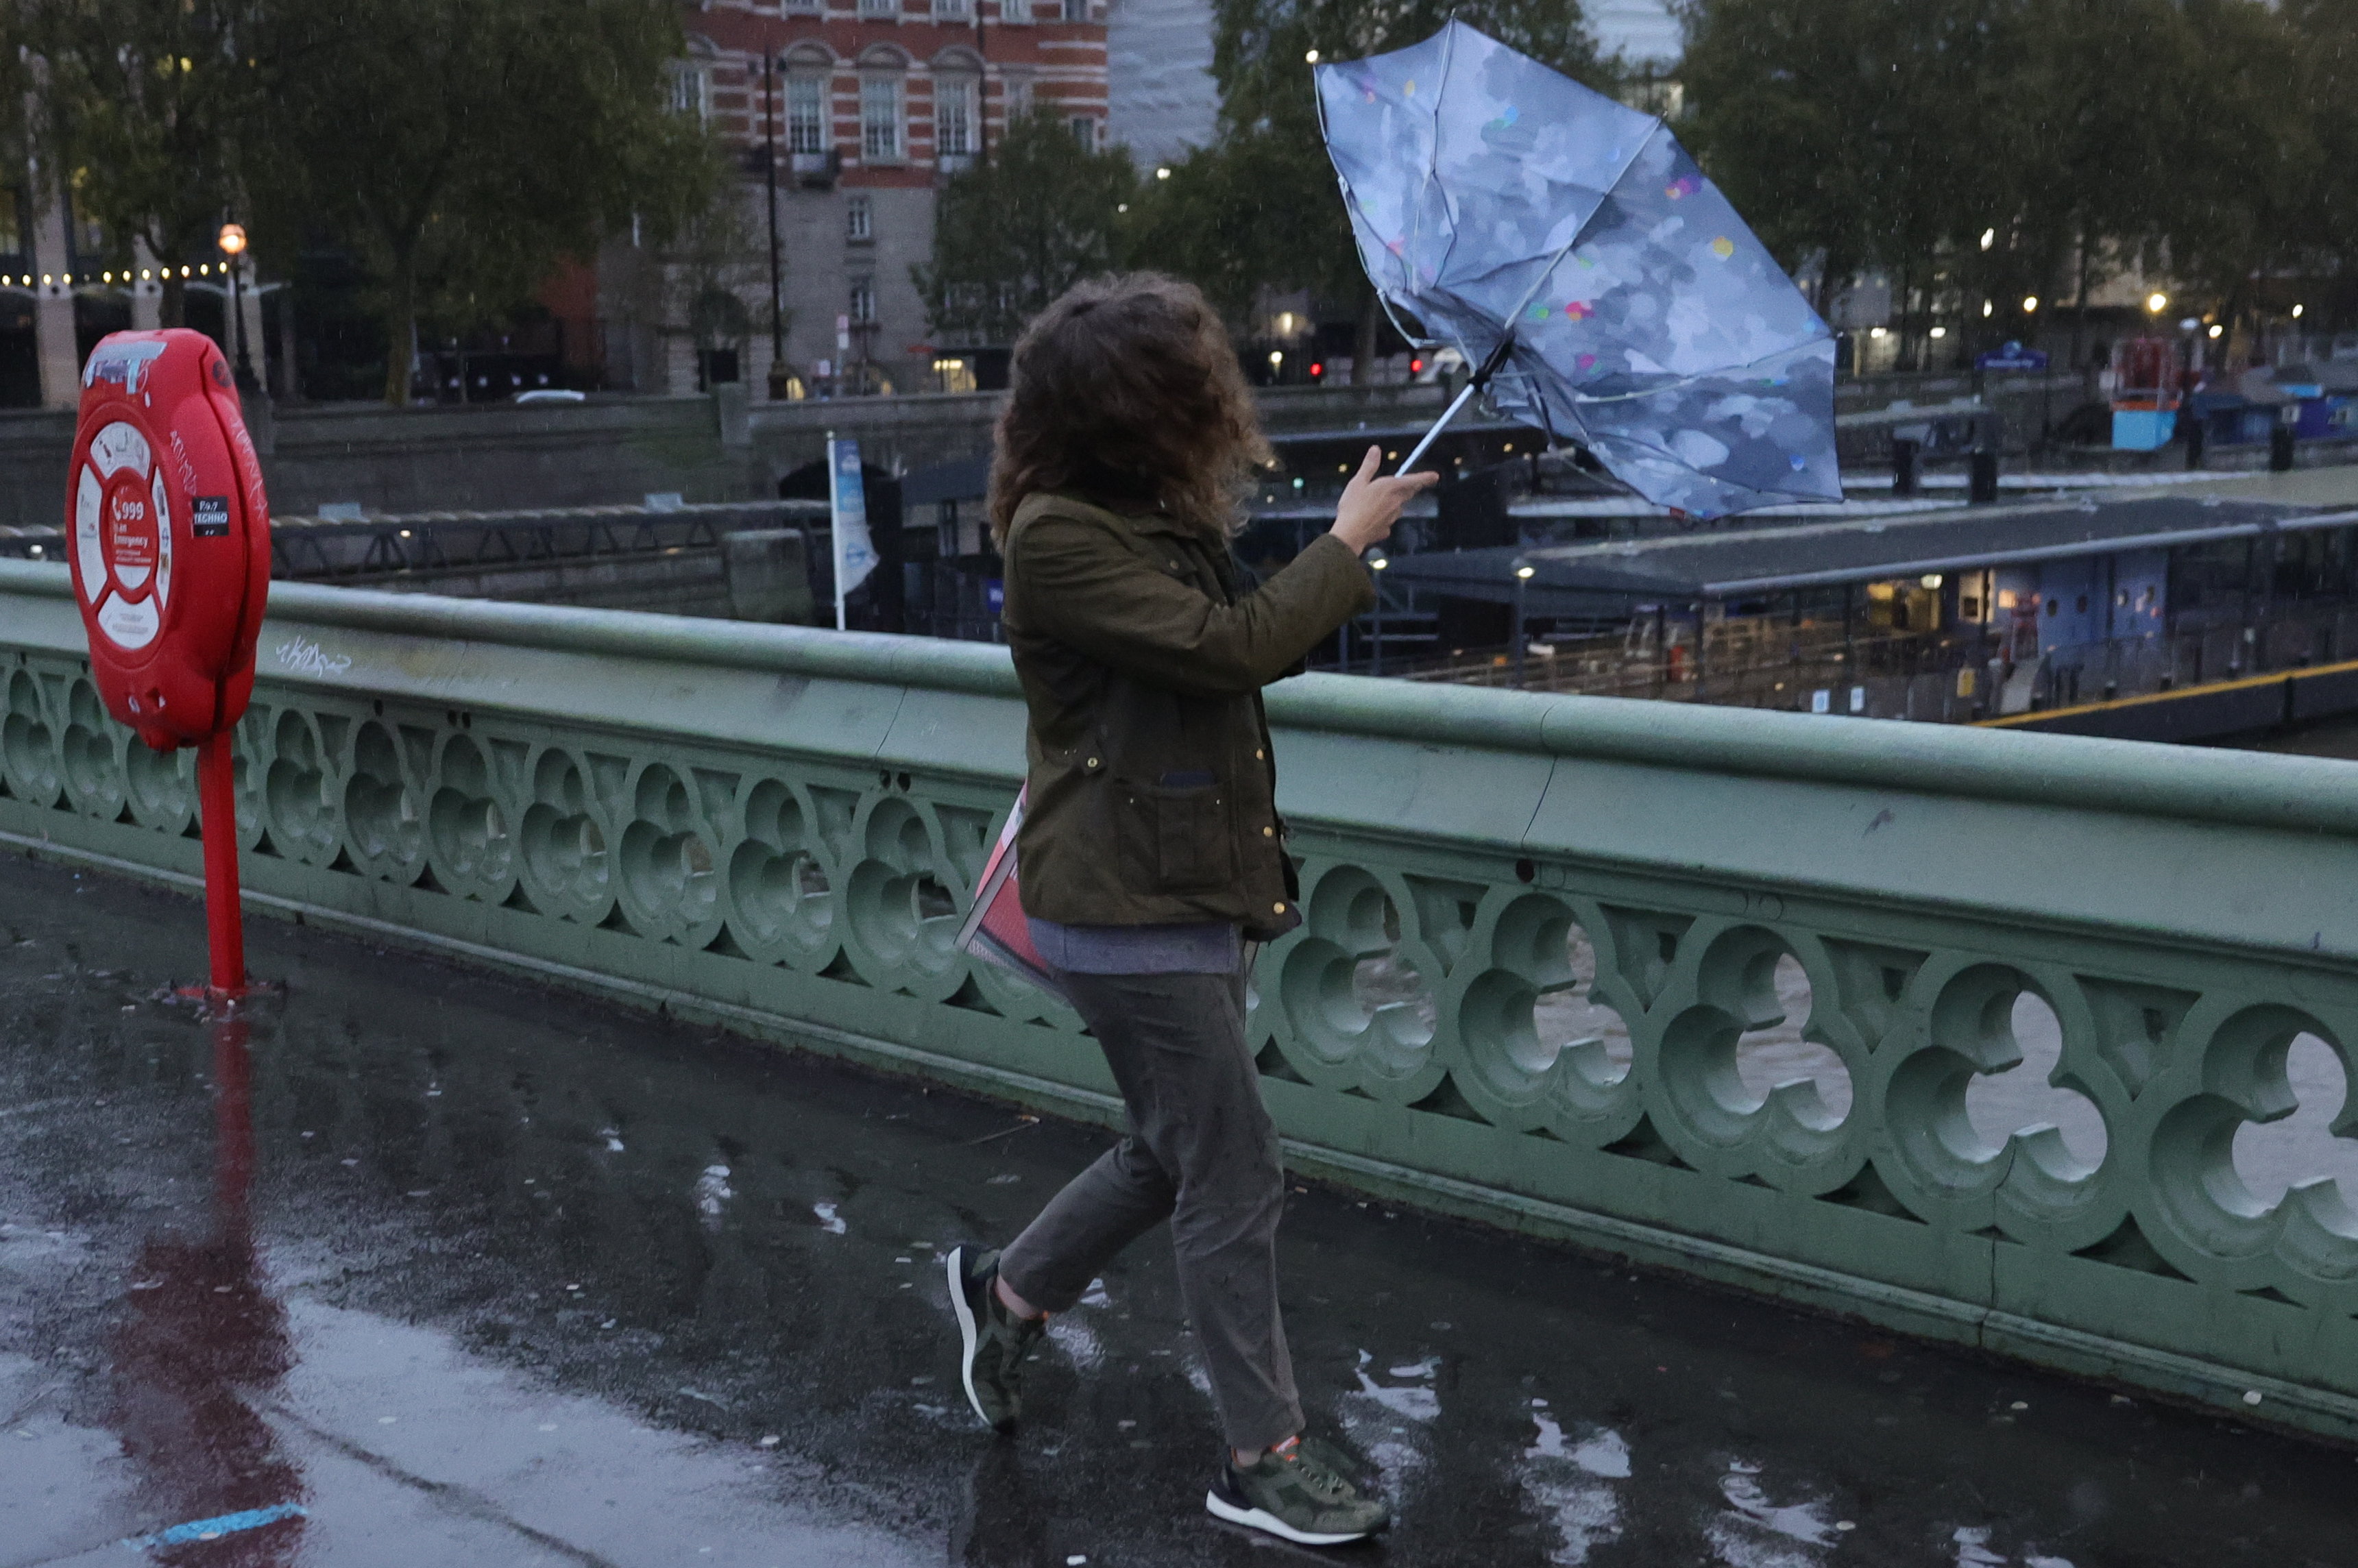 Mitglieder der Öffentlichkeit versuchen bei nassem und windigem Wetter auf der Westminster Bridge Schutz zu suchen